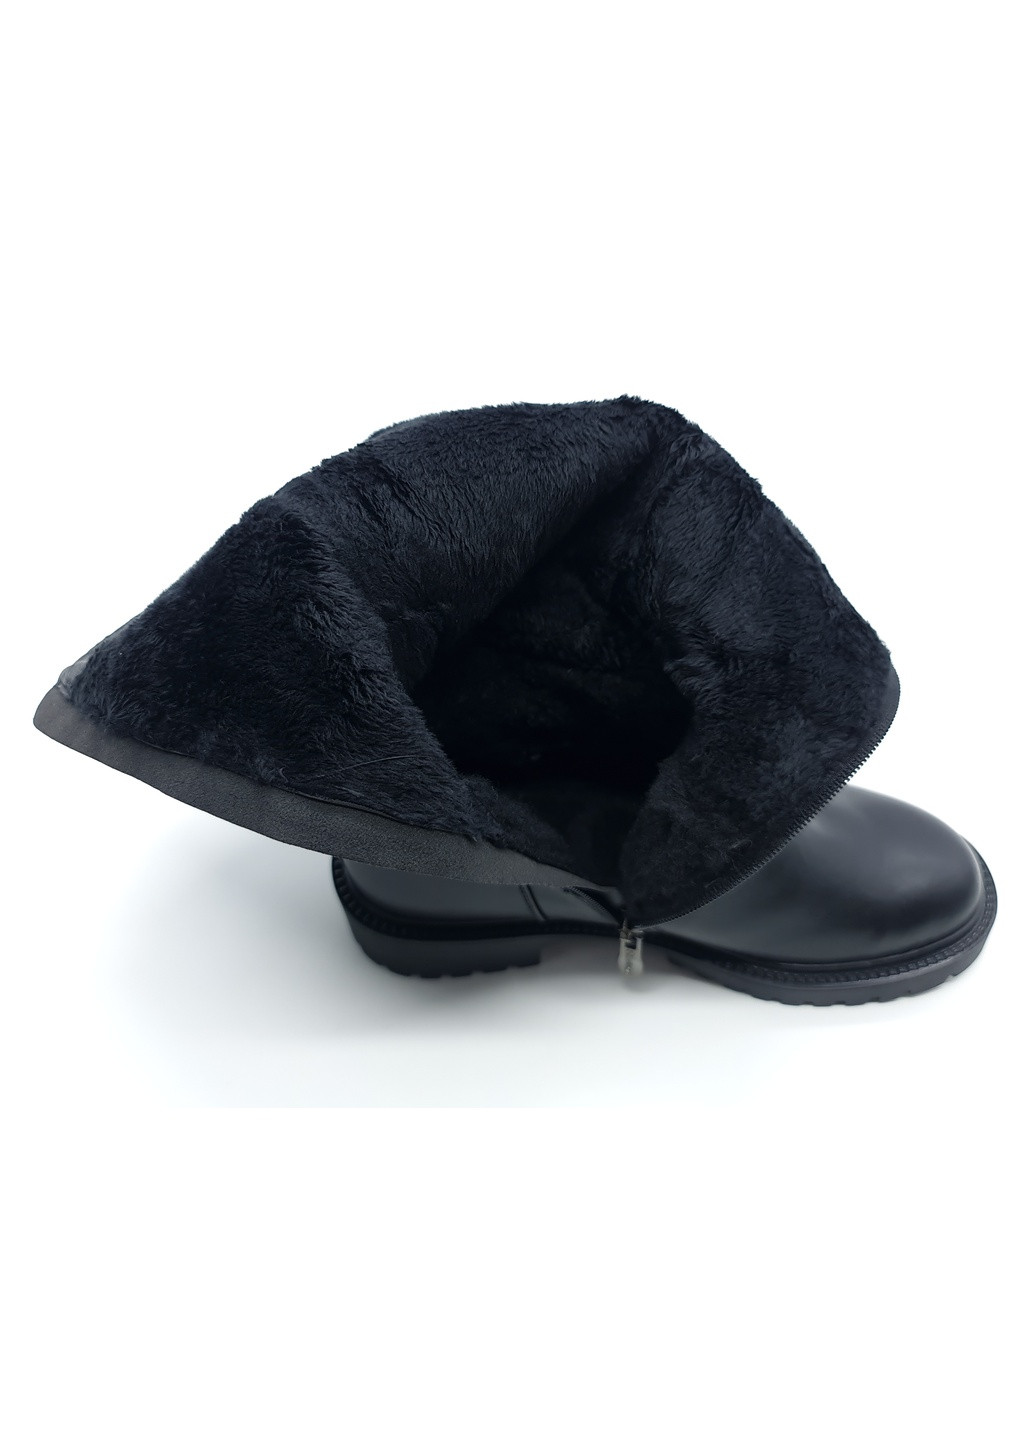 Осенние женские сапоги зимние черные кожаные lm-10-1 235 мм(р) Lino Marano